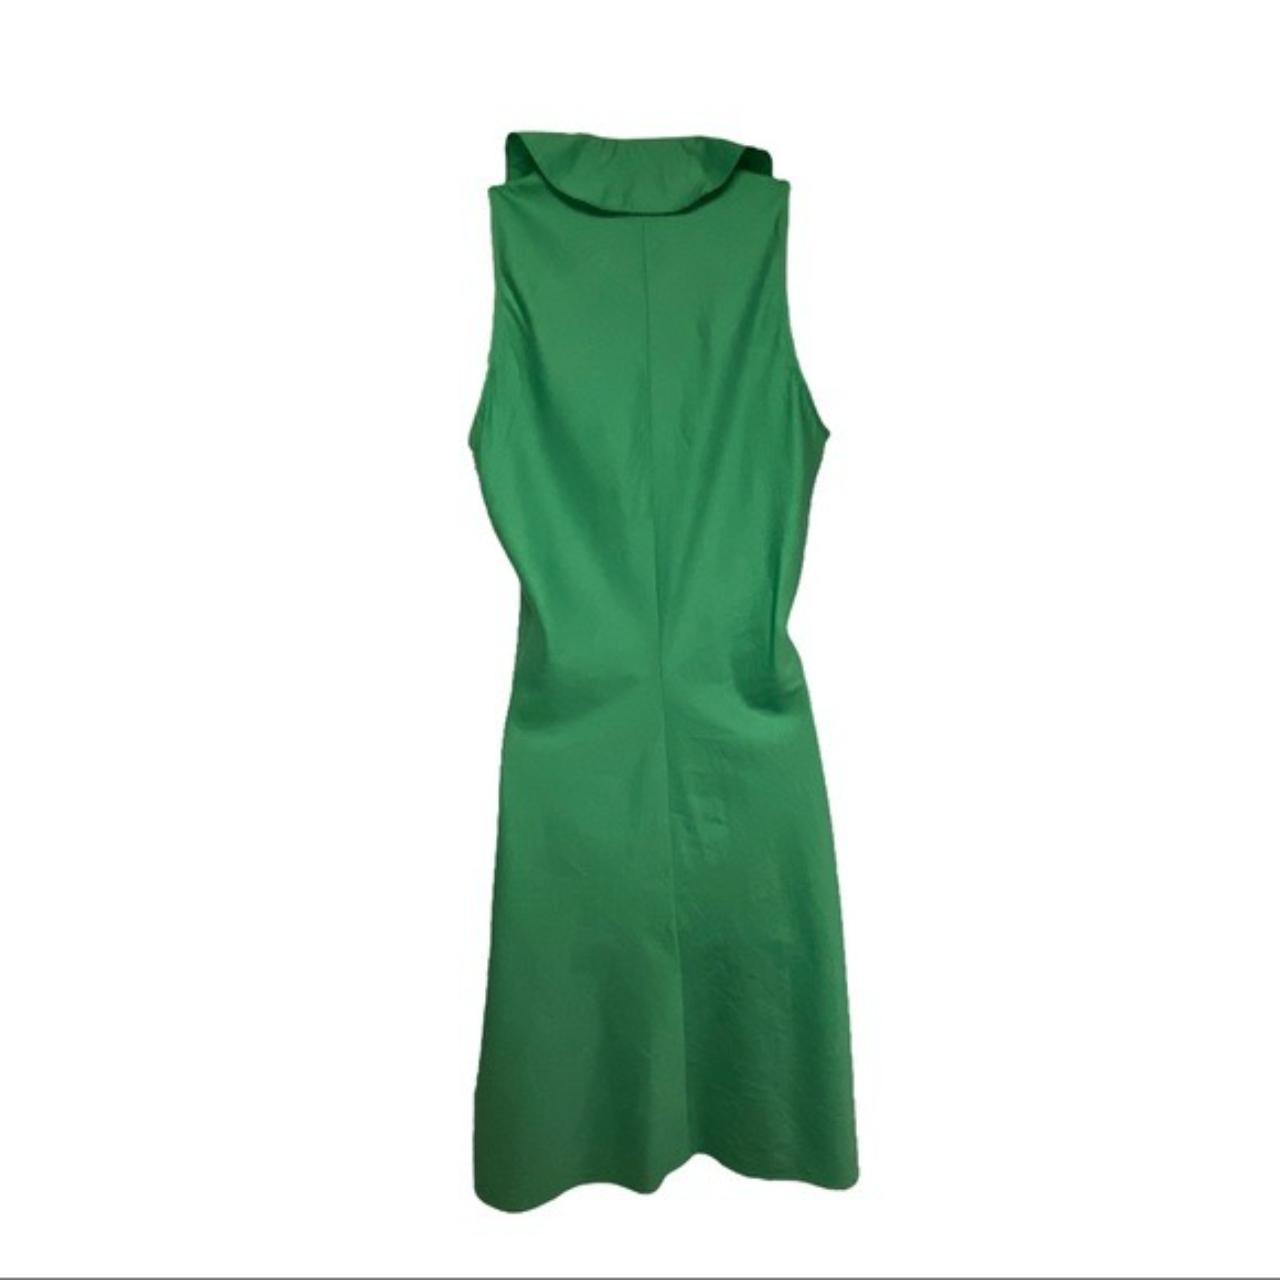 LAUREN Ralph Lauren Sleeveless Green Ruffled Dress... - Depop